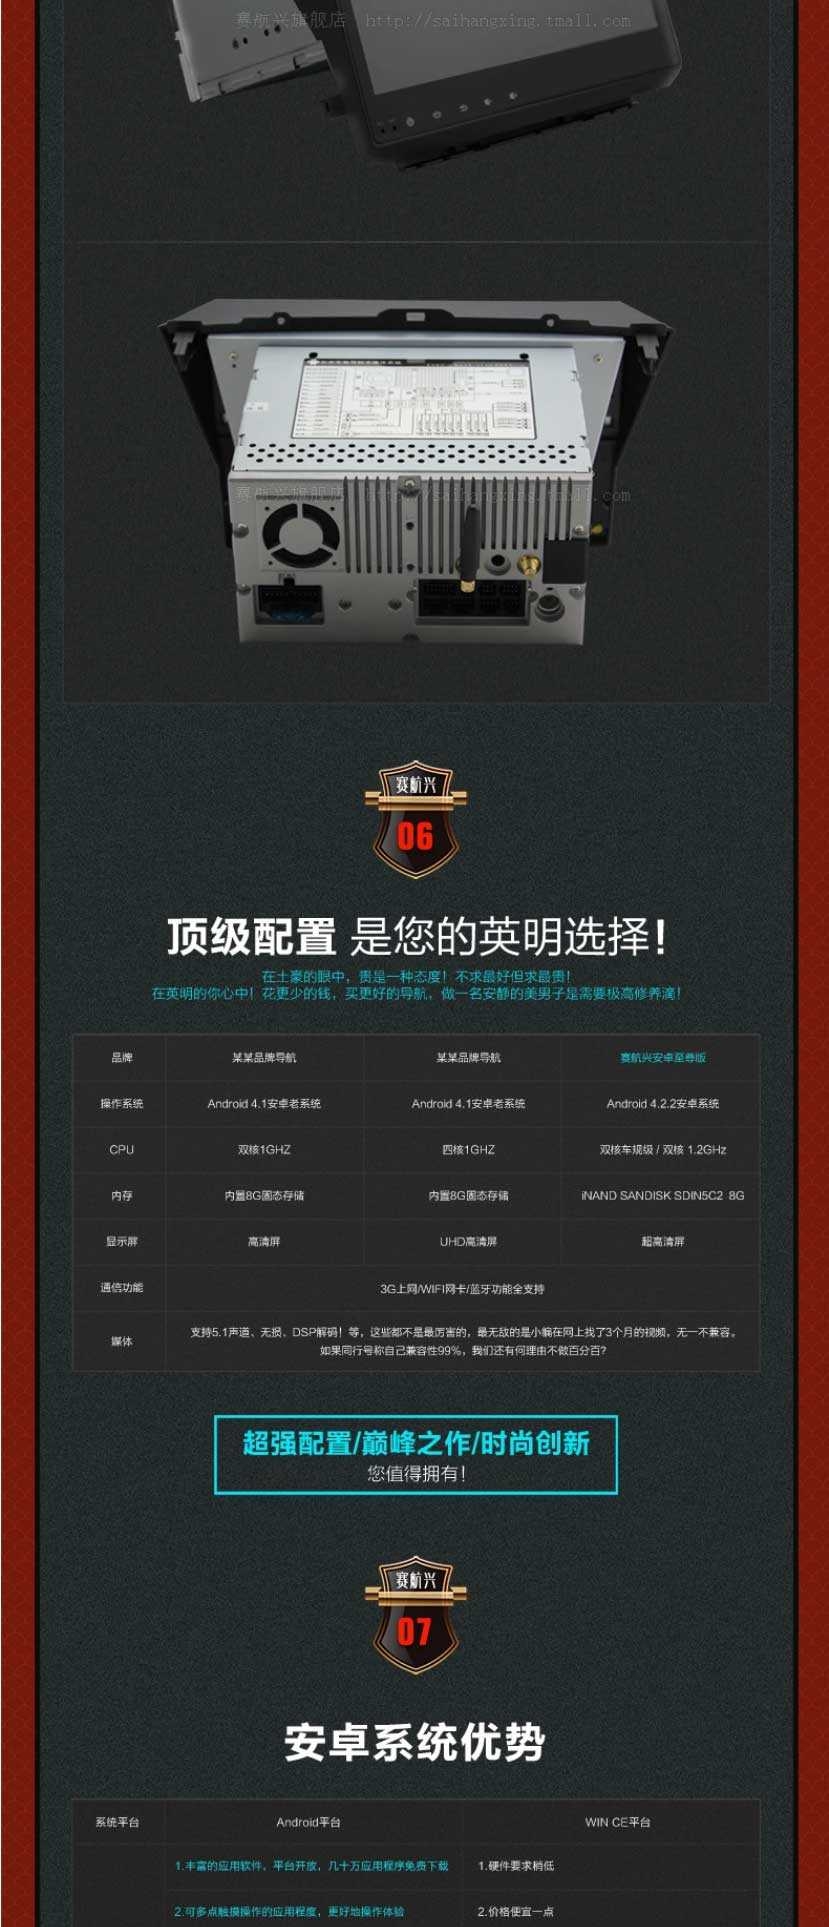 安卓广汽传祺GS5专用车载DVD导航仪一体机